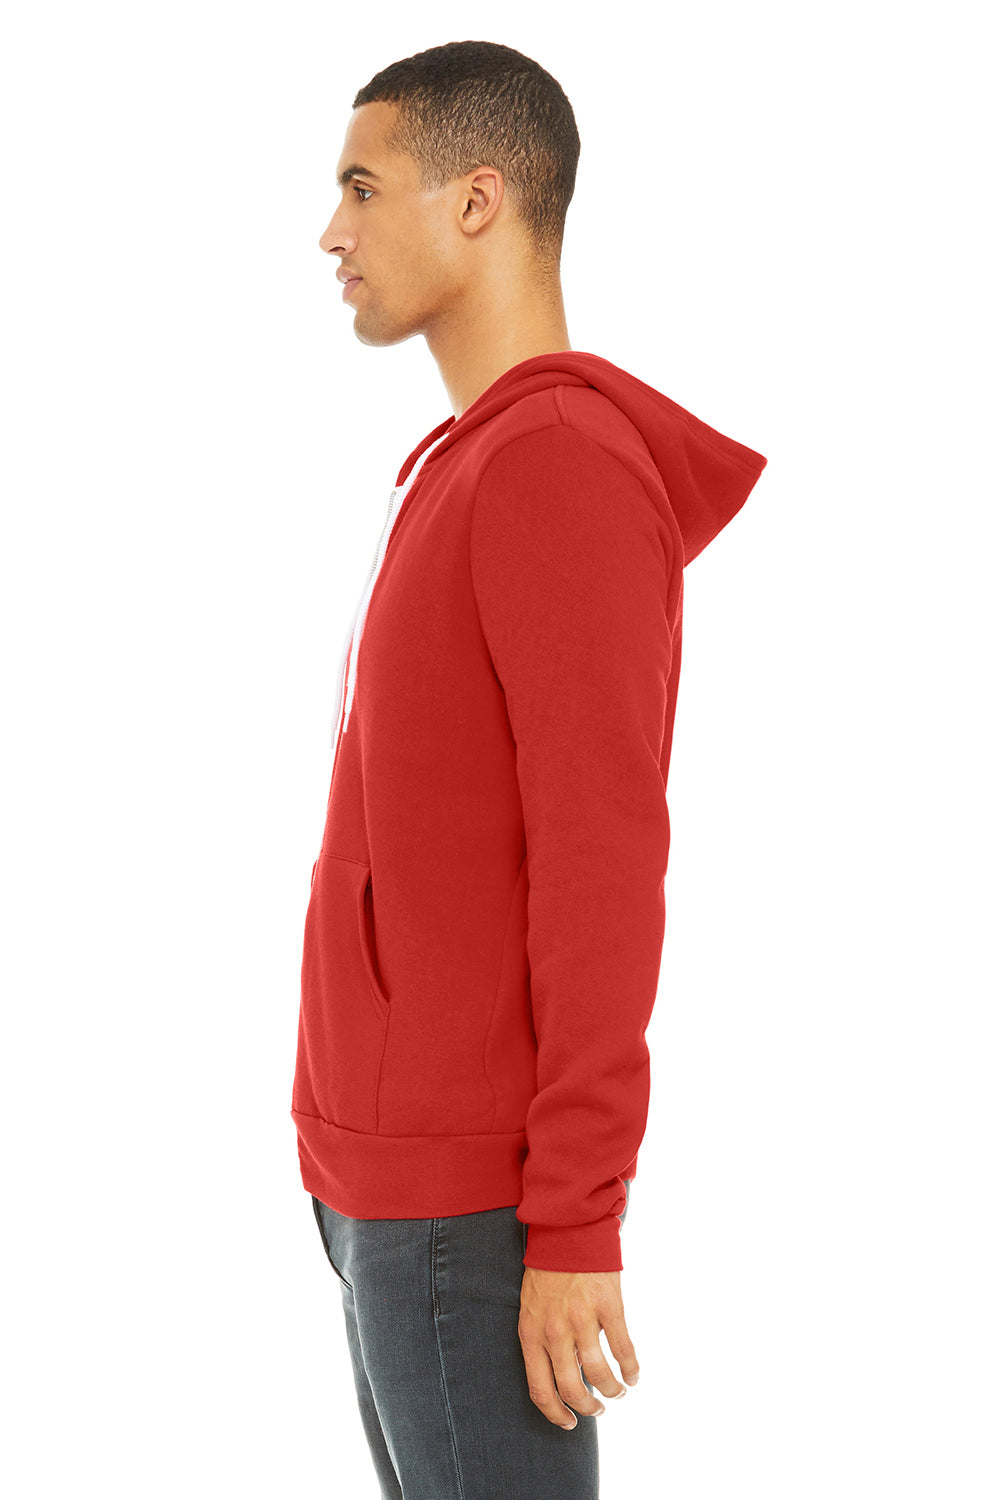 Bella + Canvas BC3739/3739 Mens Fleece Full Zip Hooded Sweatshirt Hoodie Red Model Side